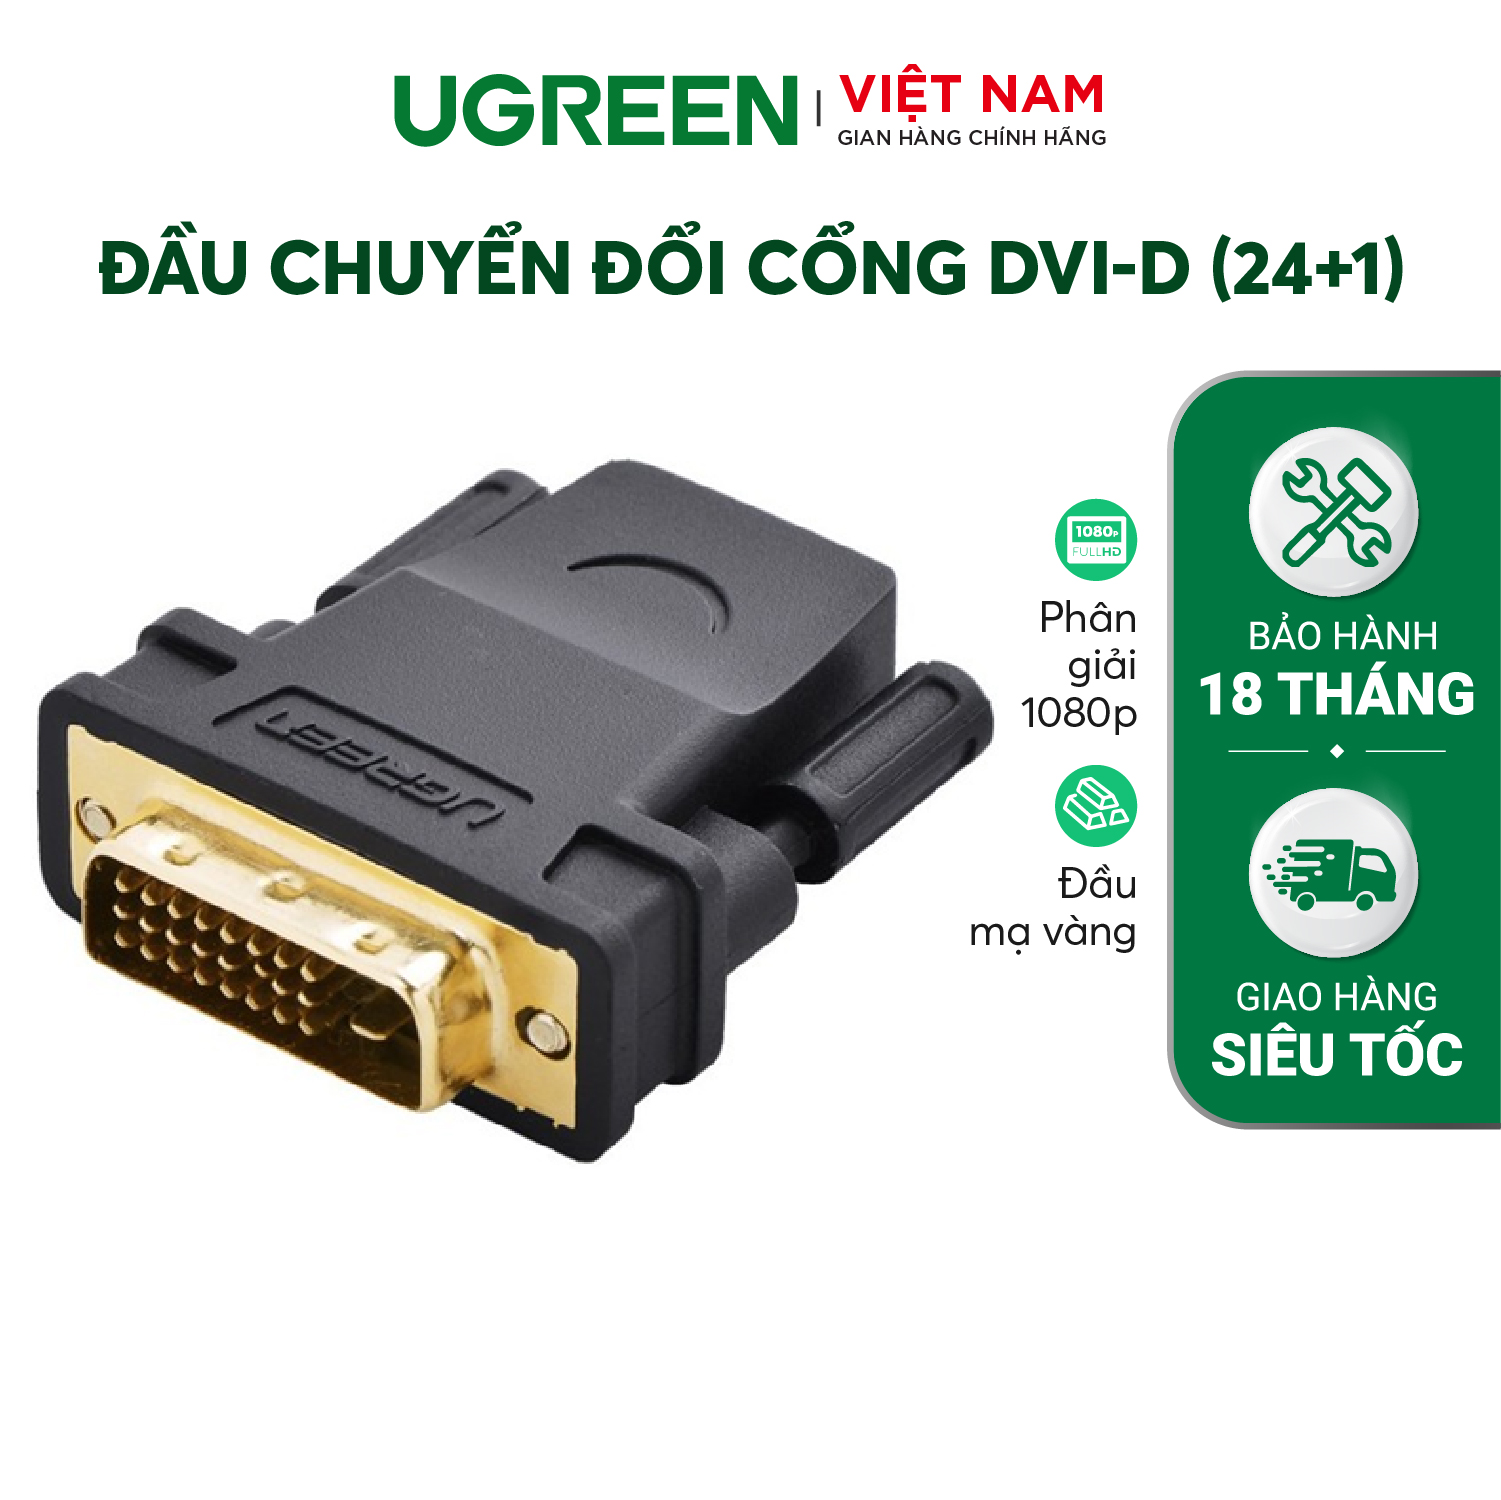 Đầu chuyển đổi UGREEN 20124 HDMI cái sang DVI 24+1 đực (màu đen) - Hàng chính hãng